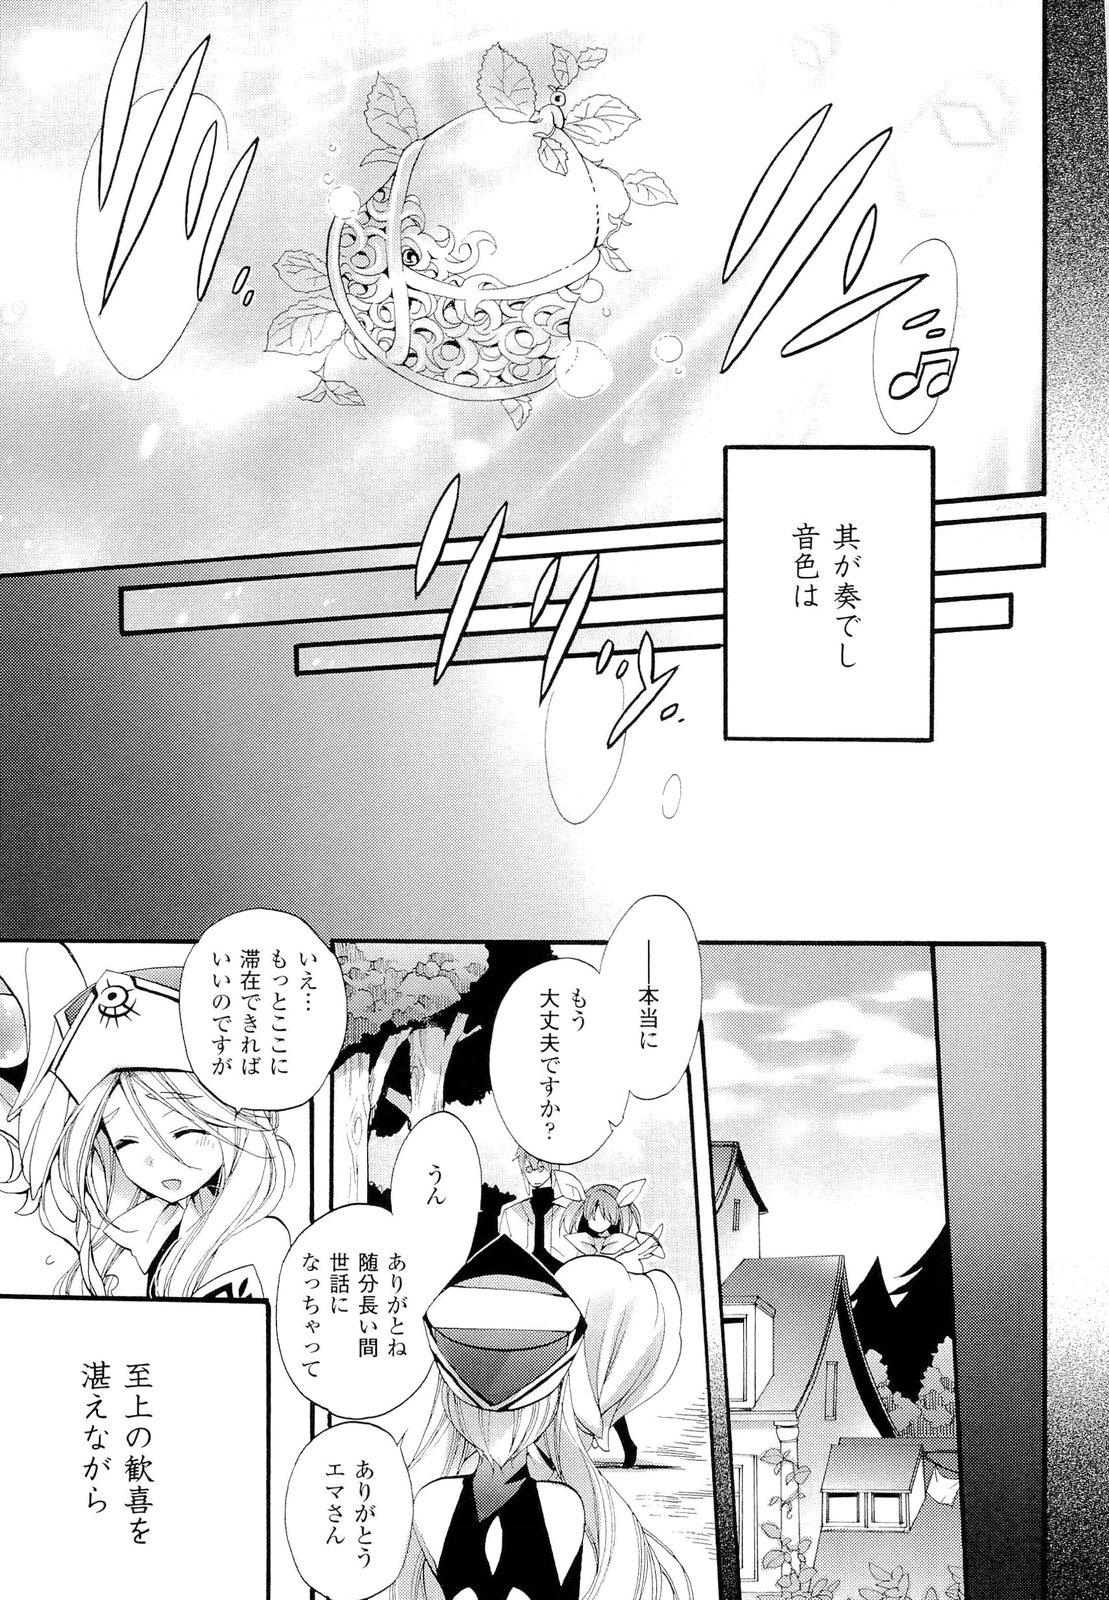 Seinaru Suzu no Naku Sekai - Holy Bell in the Fantasy World 188